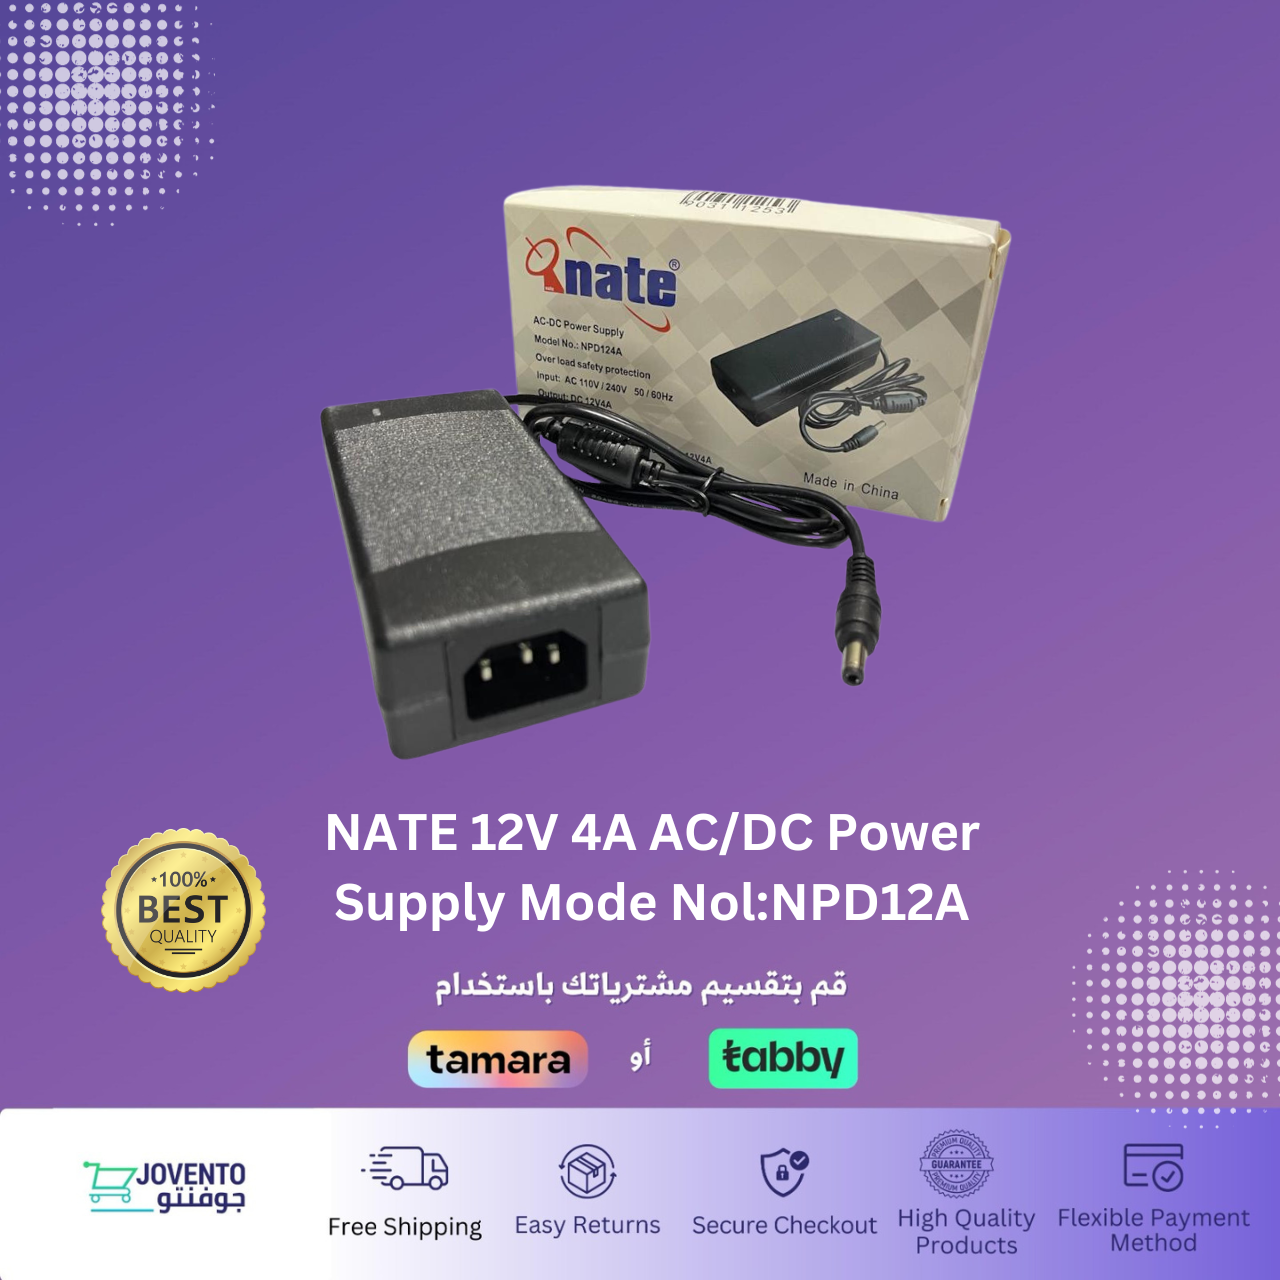 NATE 12V 4A AC/DC Power Supply Mode Nol:NPD12A